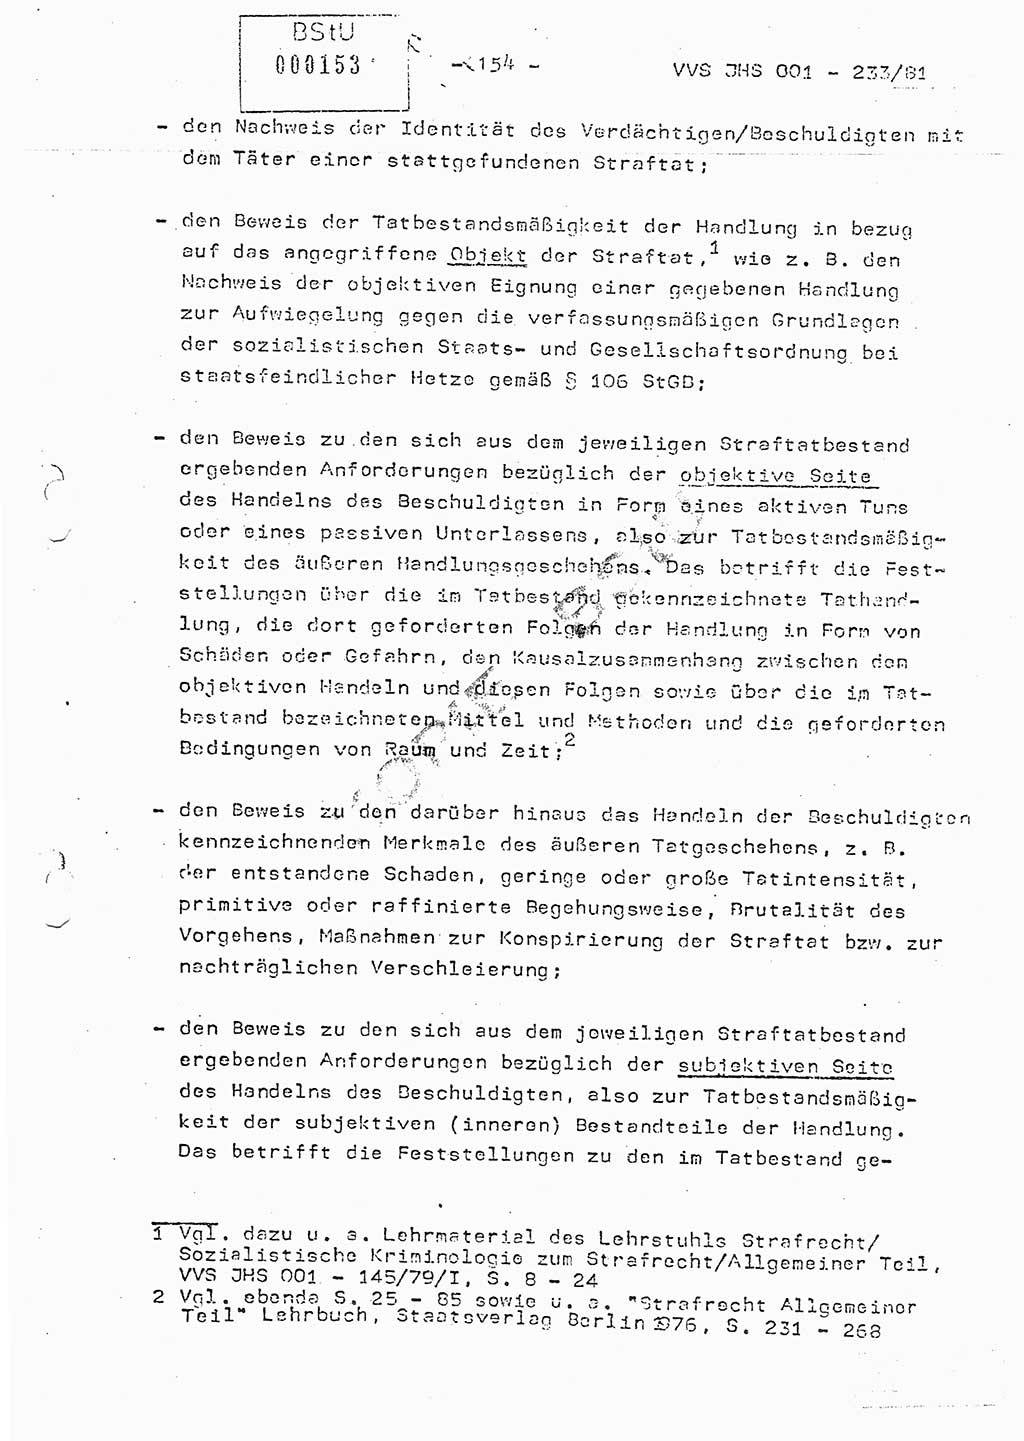 Dissertation Oberstleutnant Horst Zank (JHS), Oberstleutnant Dr. Karl-Heinz Knoblauch (JHS), Oberstleutnant Gustav-Adolf Kowalewski (HA Ⅸ), Oberstleutnant Wolfgang Plötner (HA Ⅸ), Ministerium für Staatssicherheit (MfS) [Deutsche Demokratische Republik (DDR)], Juristische Hochschule (JHS), Vertrauliche Verschlußsache (VVS) o001-233/81, Potsdam 1981, Blatt 154 (Diss. MfS DDR JHS VVS o001-233/81 1981, Bl. 154)